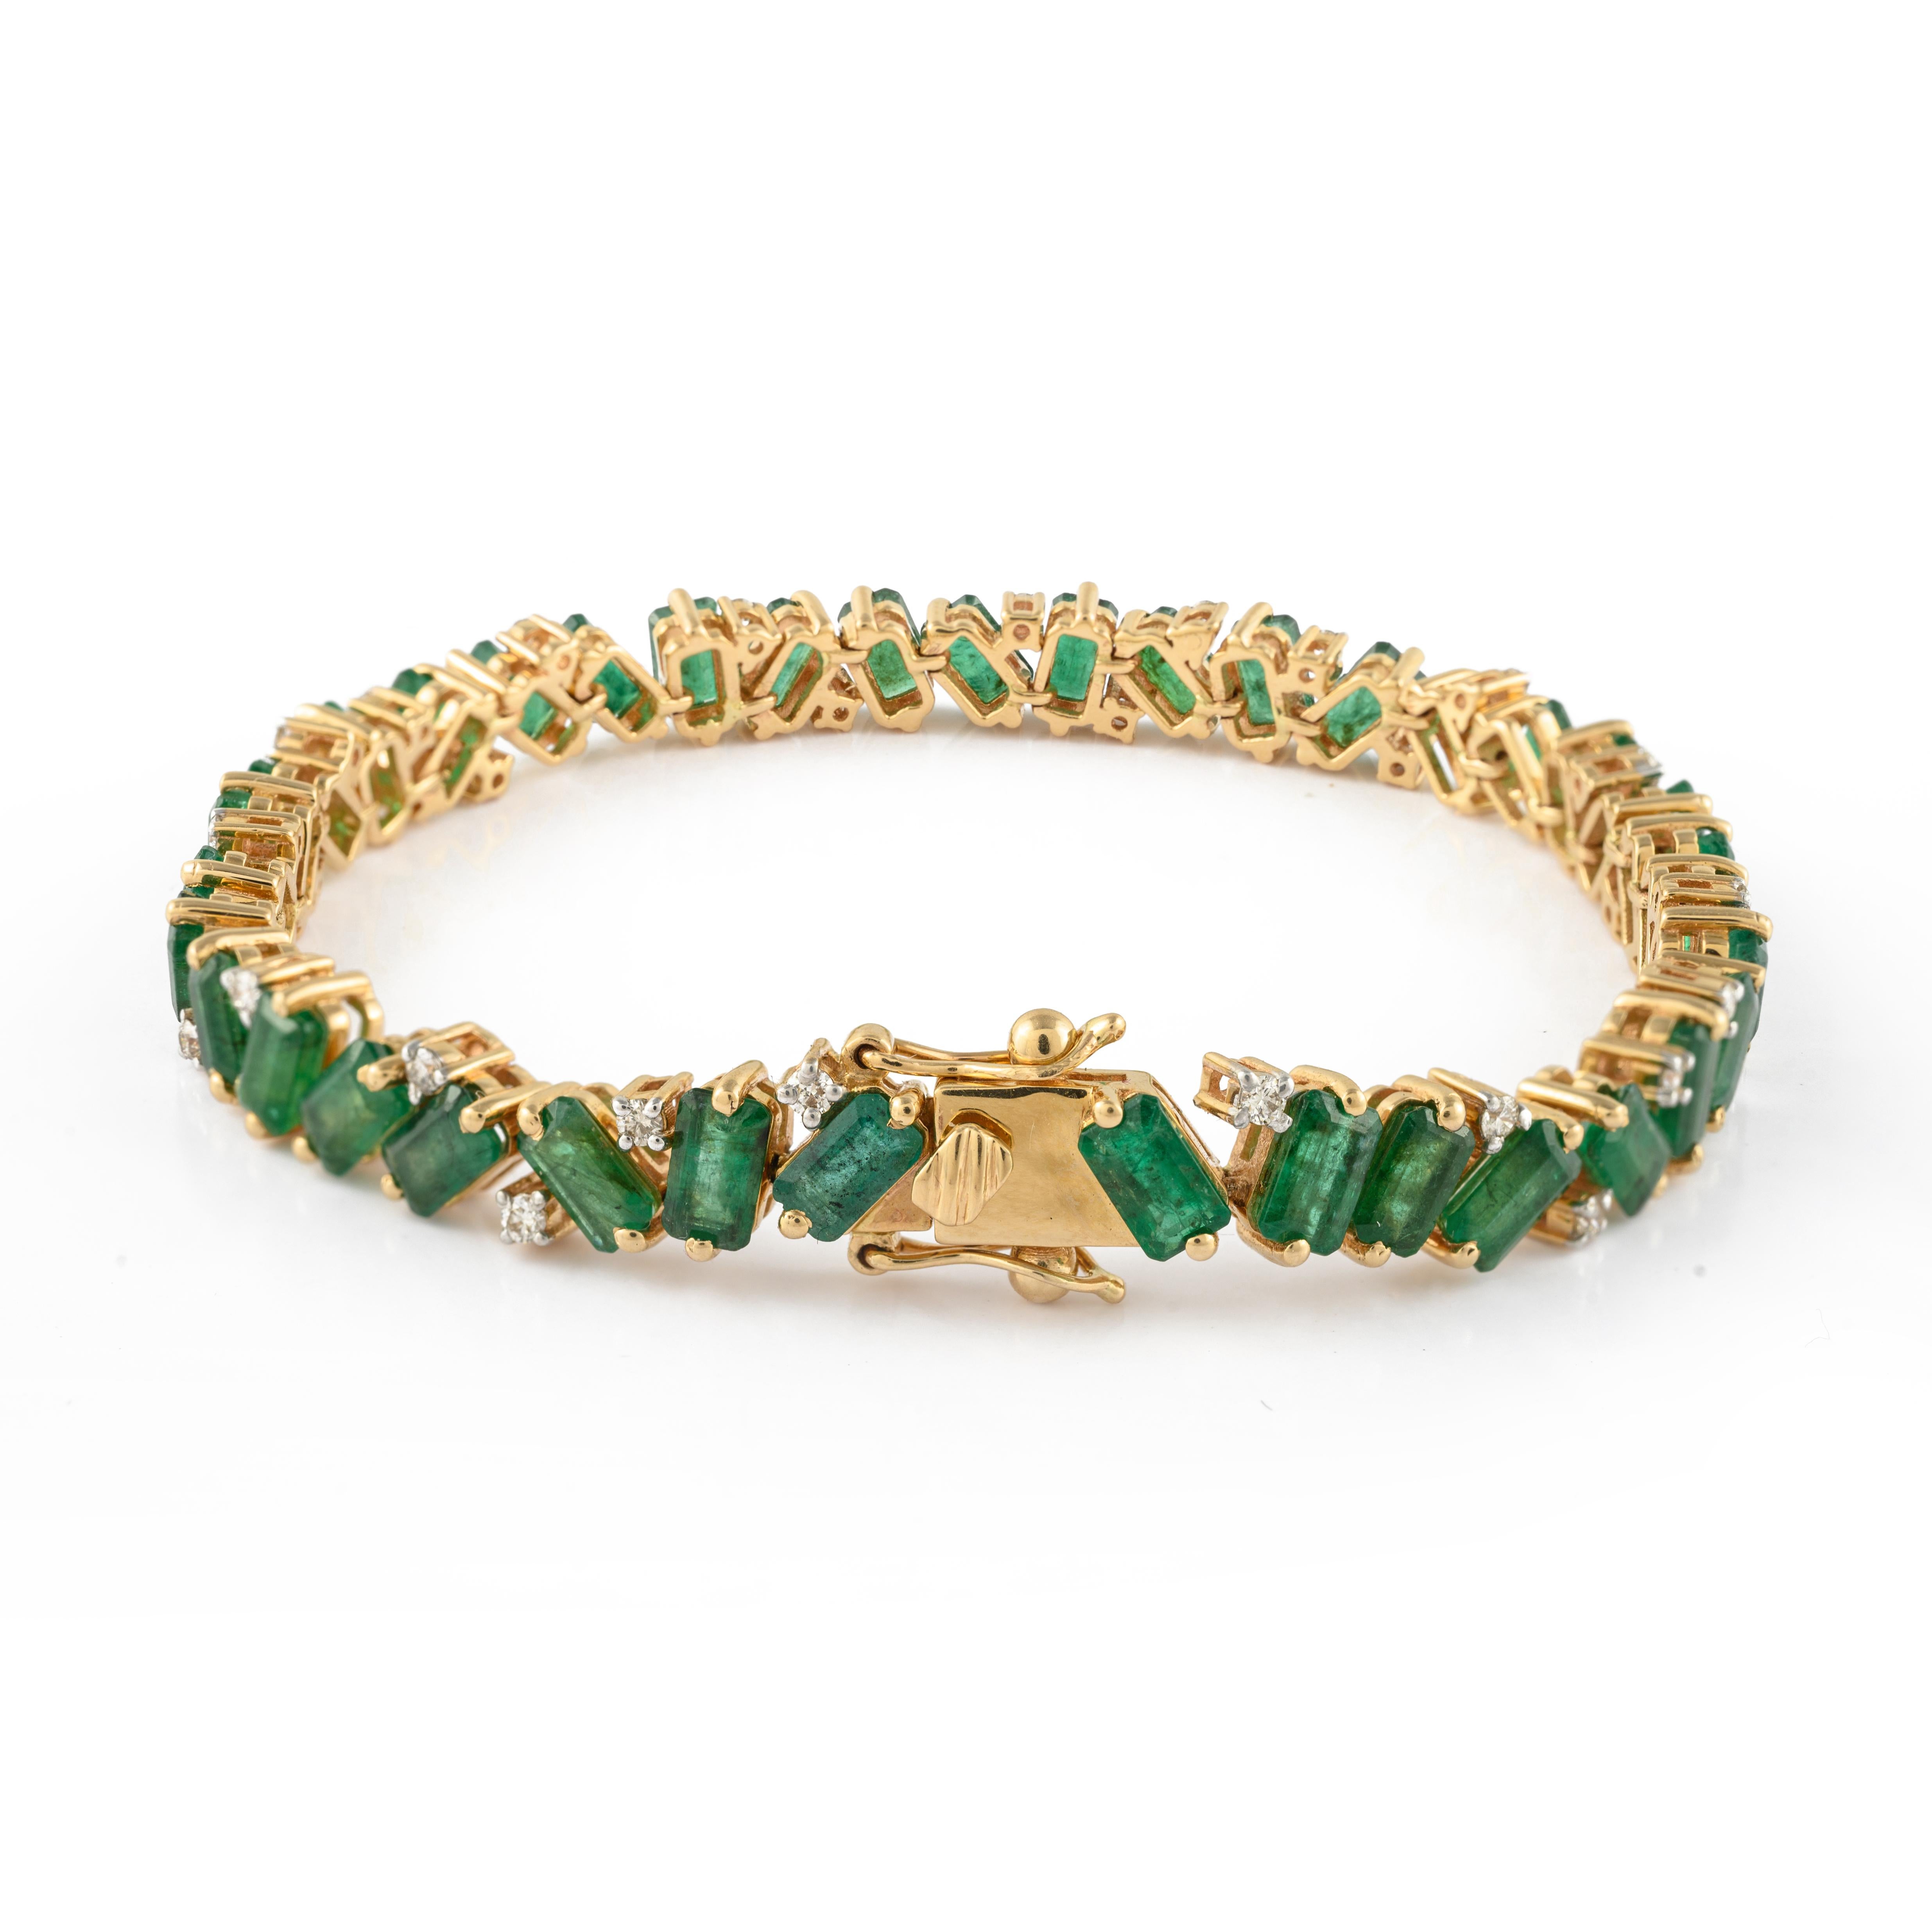 Dieses einzigartige Diamant- und Smaragd-Tennisarmband aus 14-karätigem Gold präsentiert 37 unendlich funkelnde natürliche Smaragde mit einem Gewicht von 10,68 Karat. Es misst 7 Zoll in der Länge. 
Smaragd steigert die intellektuellen Fähigkeiten